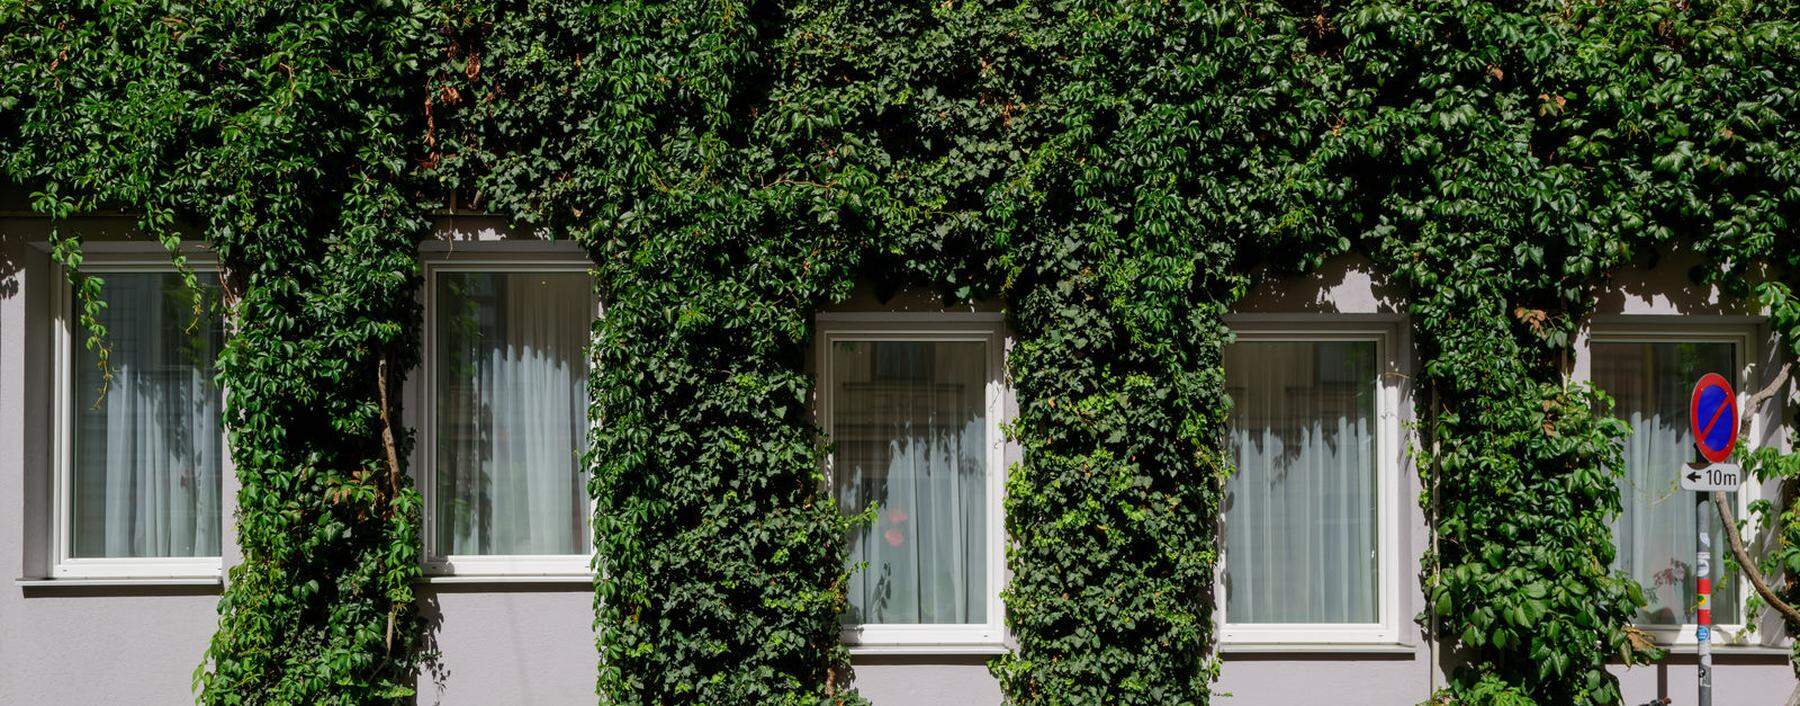 Bodengebundene Fassadenbegrünung ist nachhaltiger als fassadenintegrierte. Wien-Alsergrund. 